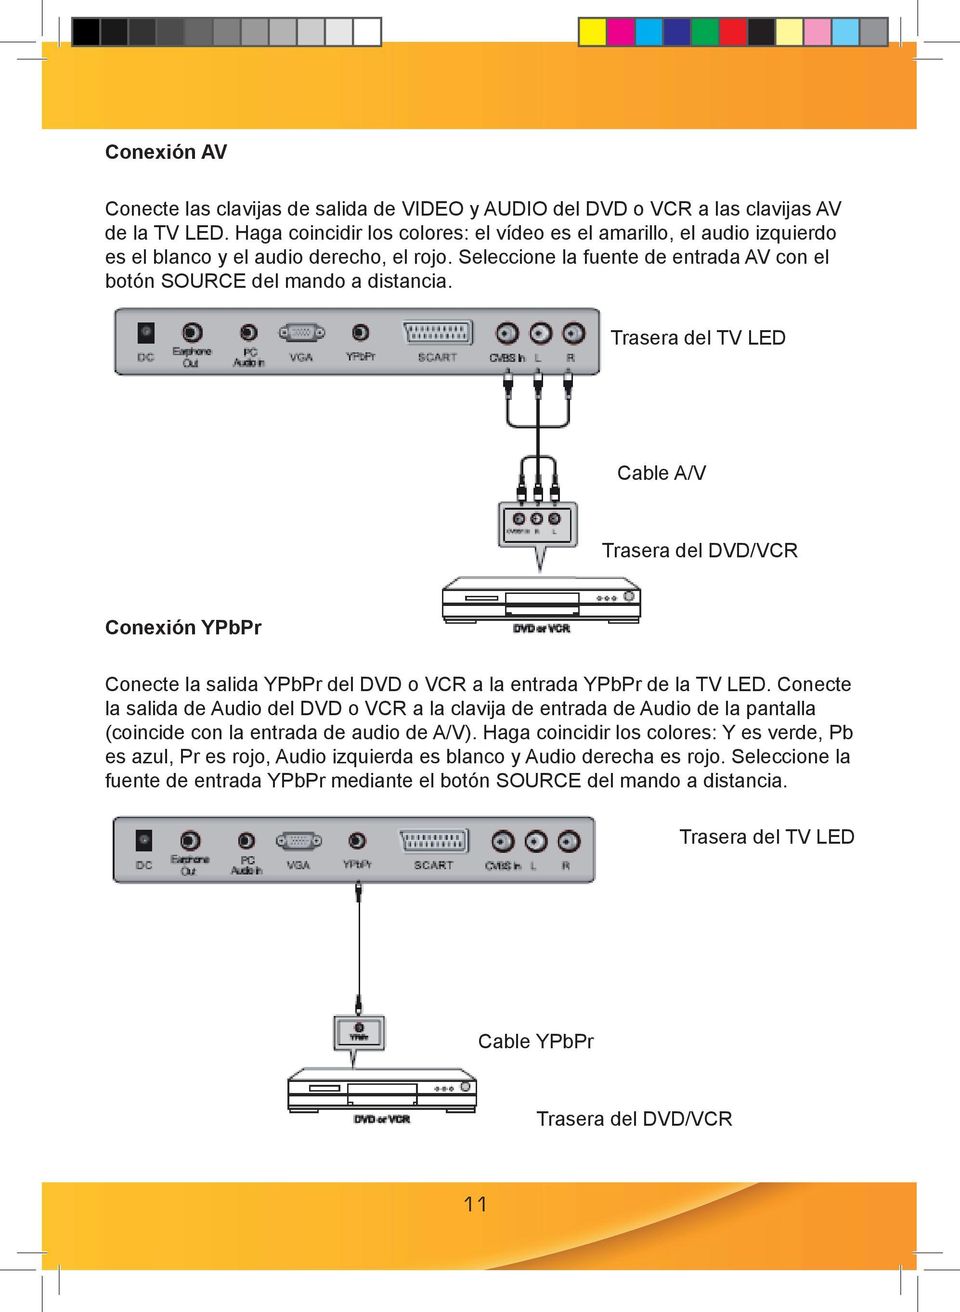 Trasera del TV LED Cable A/V Trasera del DVD/VCR Conexión YPbPr Conecte la salida ypbpr del DVD o VCR a la entrada ypbpr de la TV LED.